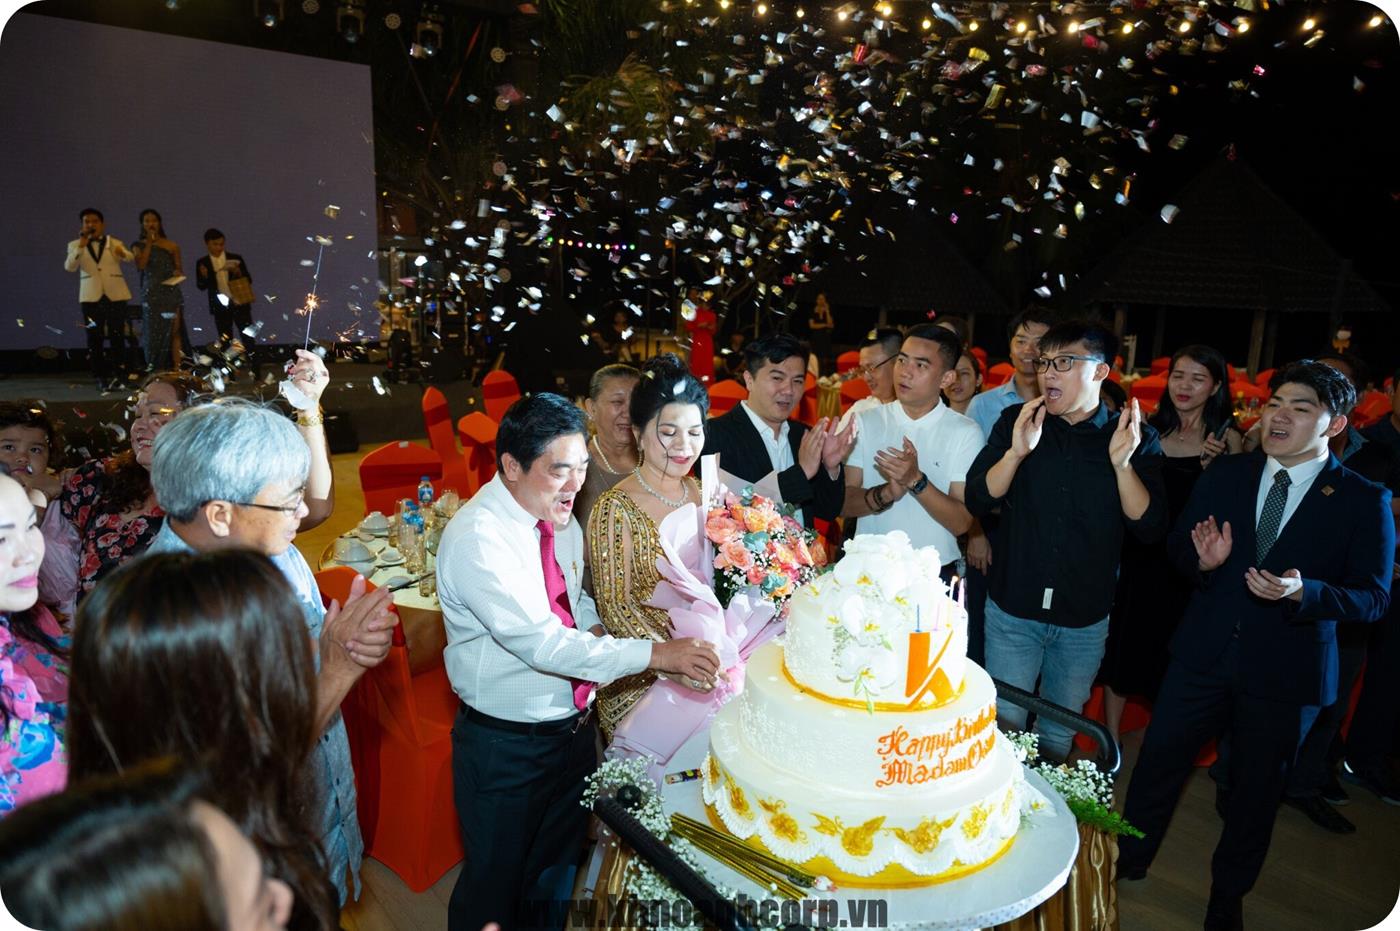 Bà Đặng Thị Kim Oanh cắt bánh kem khai tiệc và nhận những lời chúc tốt đẹp từ gia đình và tập thể Kim Oanh Group.